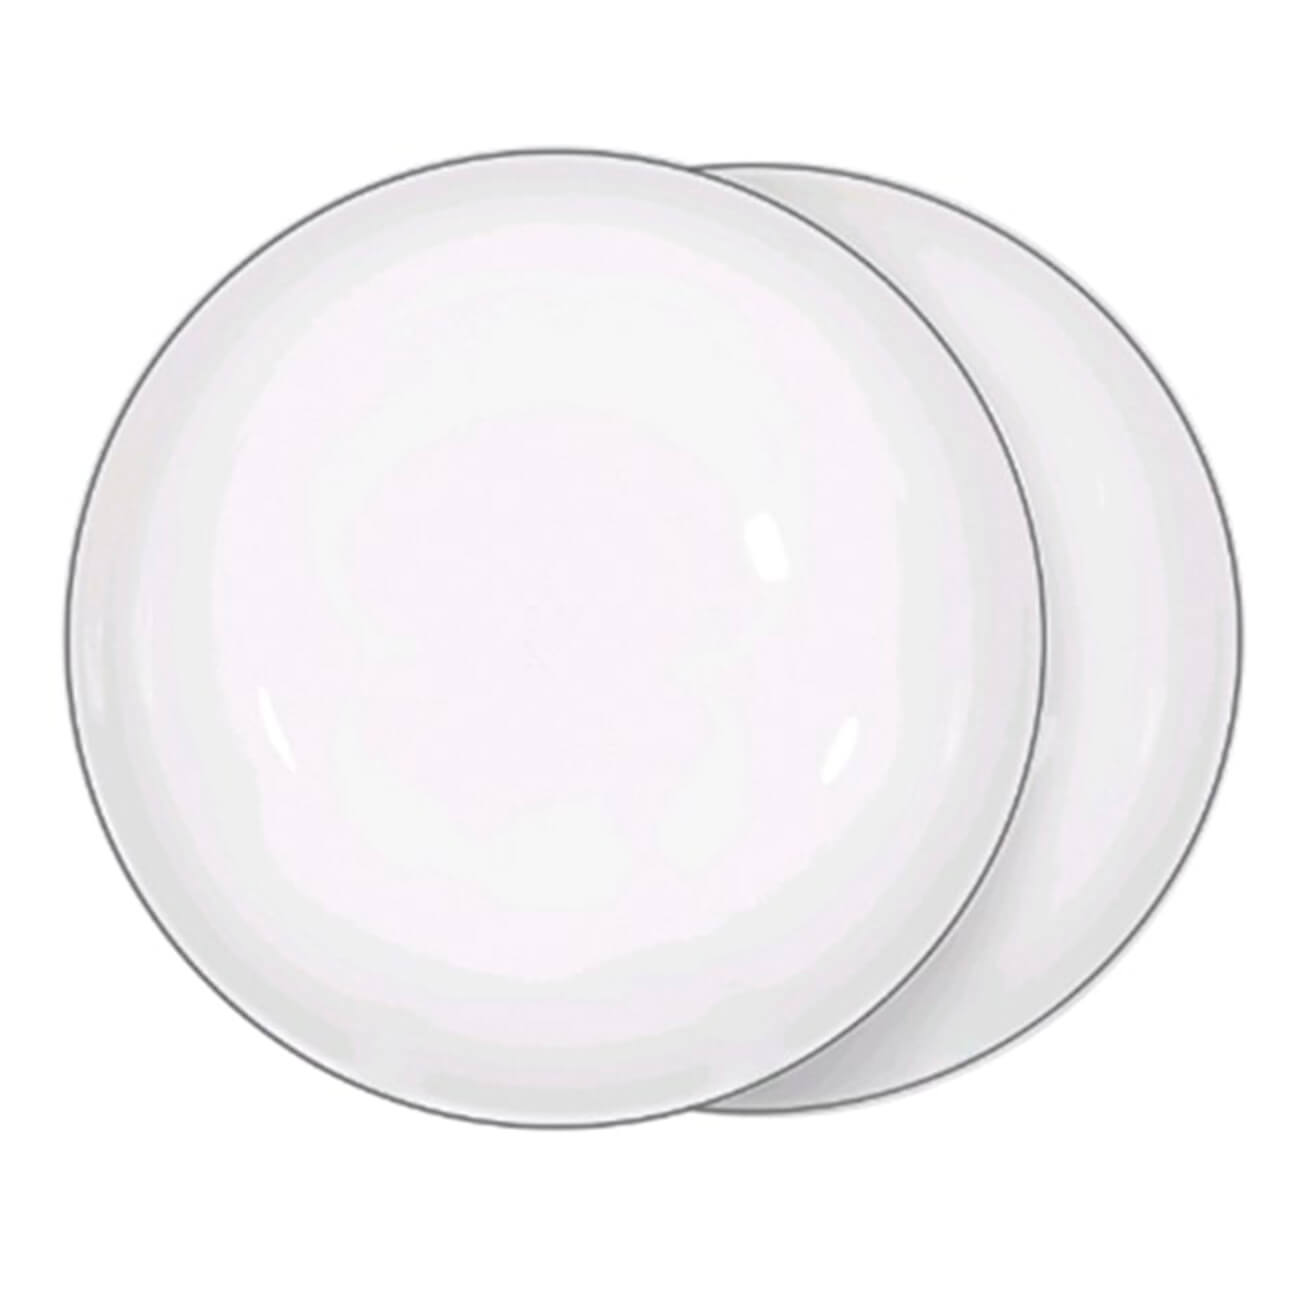 Тарелка суповая, 20х5 см, 2 шт, фарфор F, белая, Ideal silver изображение № 1